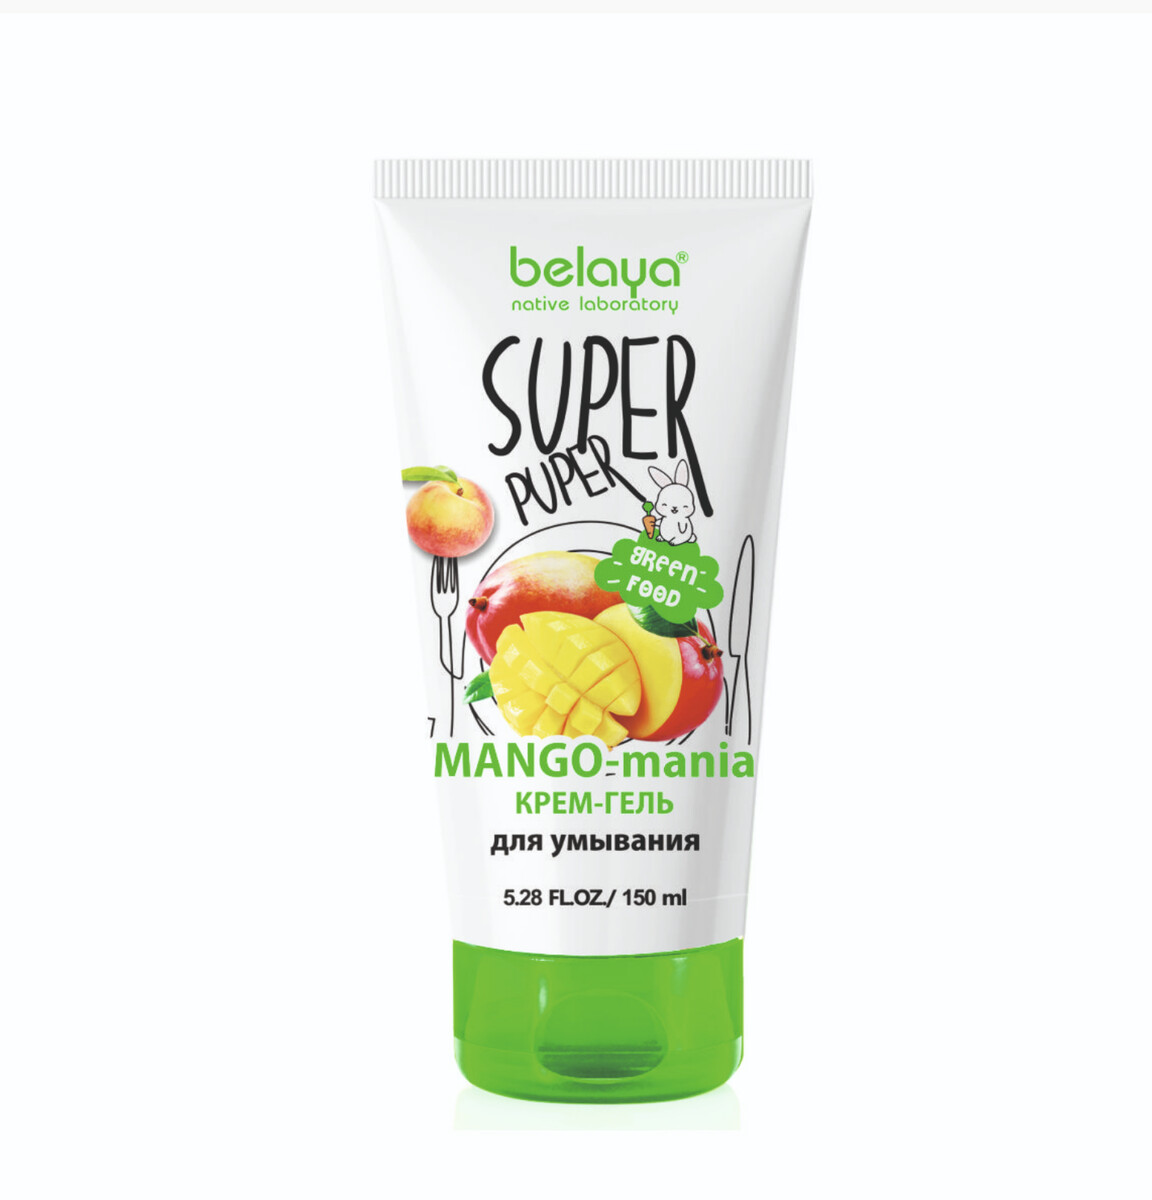 Super puper крем-гель для умывания (mango-mania) 150мл super puper крем гель для умывания mango mania 150мл